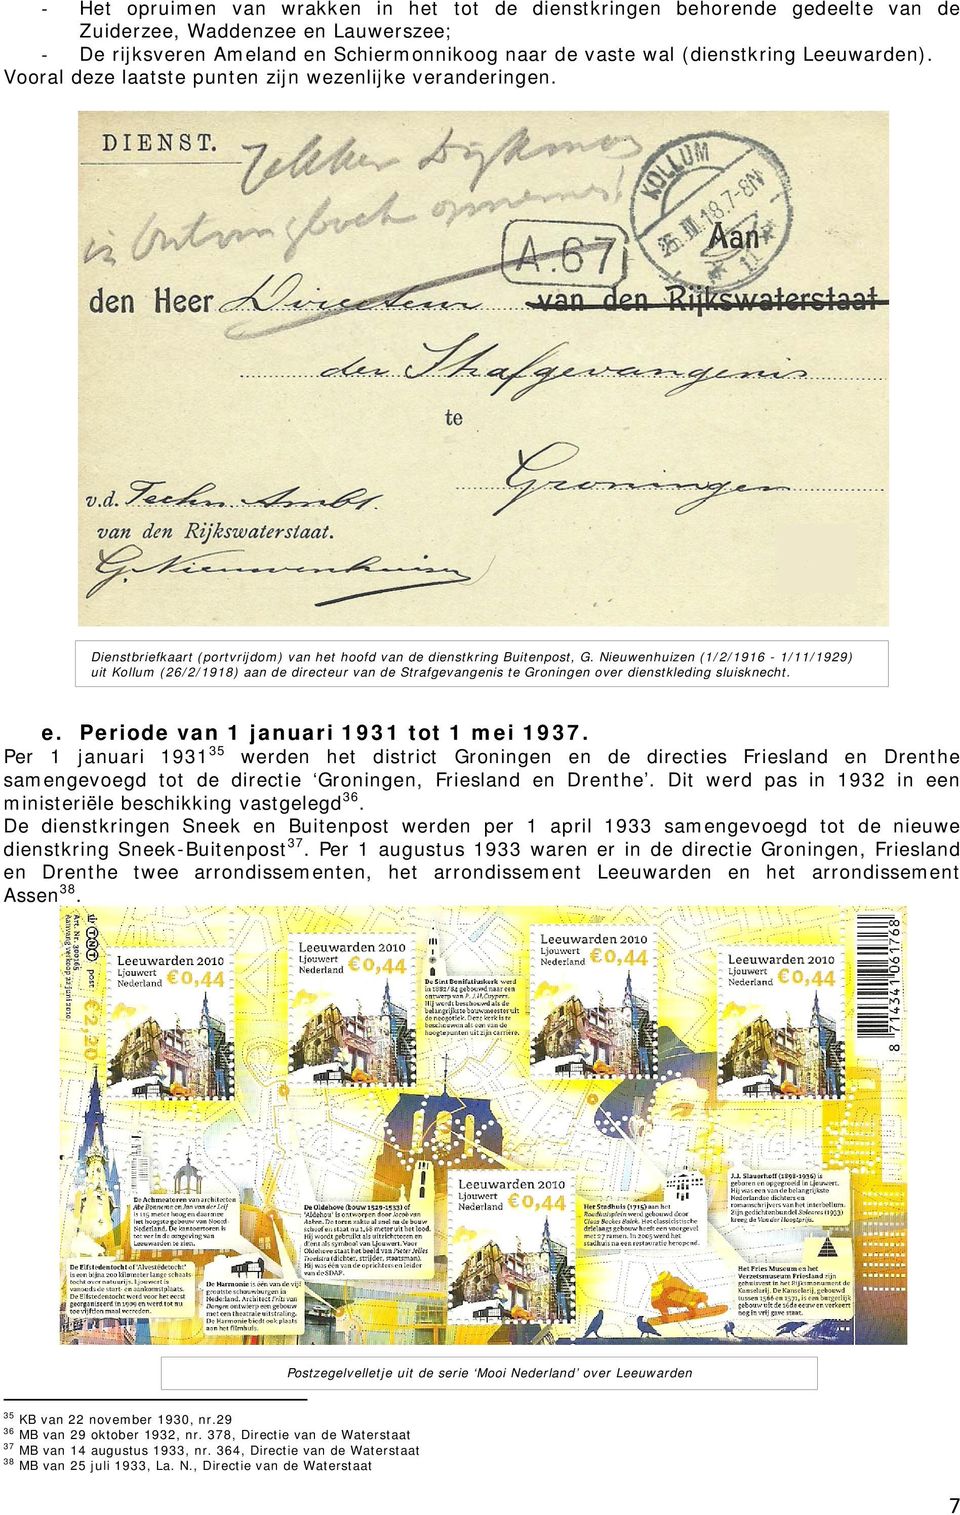 Nieuwenhuizen (1/2/1916-1/11/1929) uit Kollum (26/2/1918) aan de directeur van de Strafgevangenis te Groningen over dienstkleding sluisknecht. e. Periode van 1 januari 1931 tot 1 mei 1937.